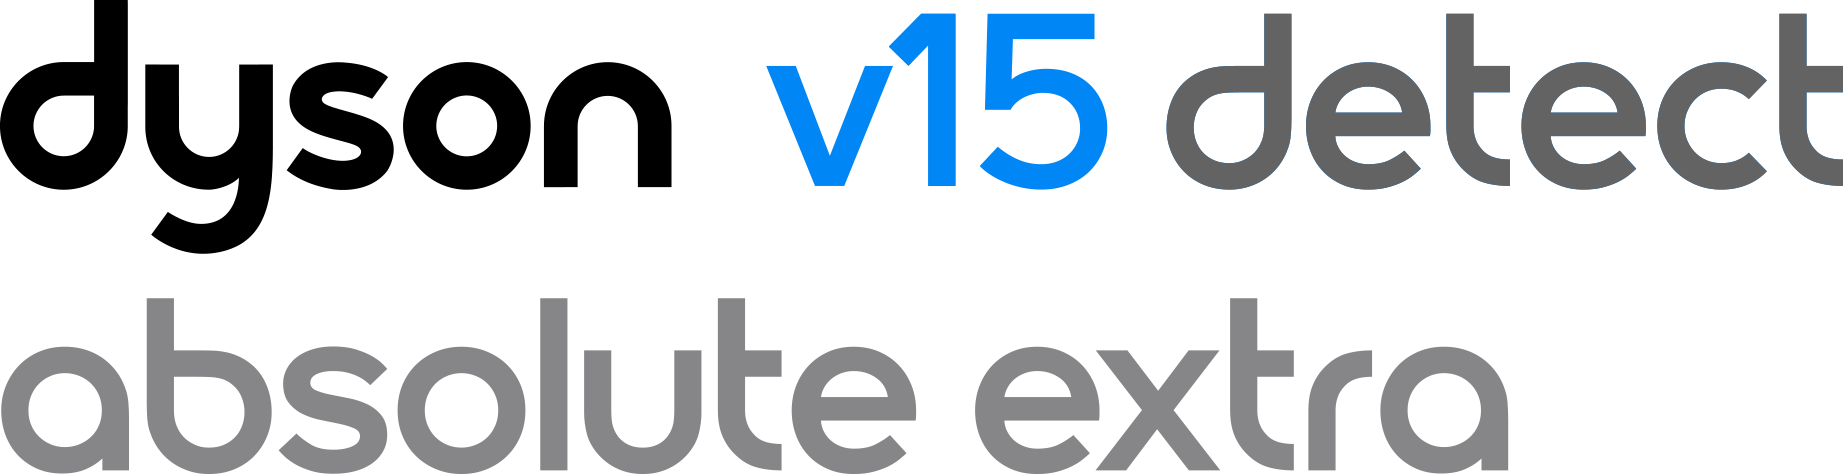 Dyson V15 Detect Absolute Extra logo